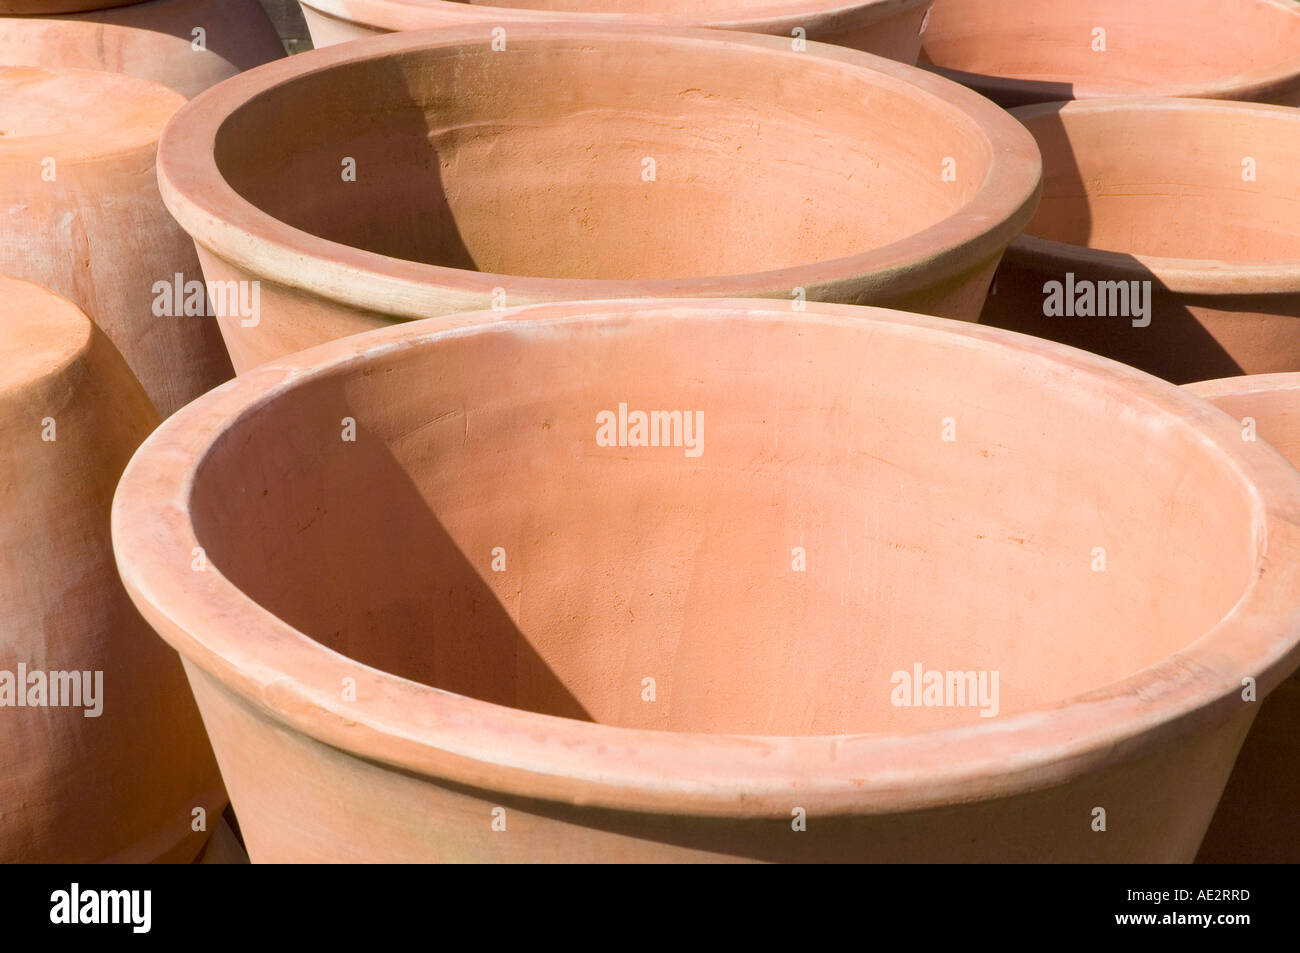 Tera cota or terracotta pots in bright sunshine Stock Photo